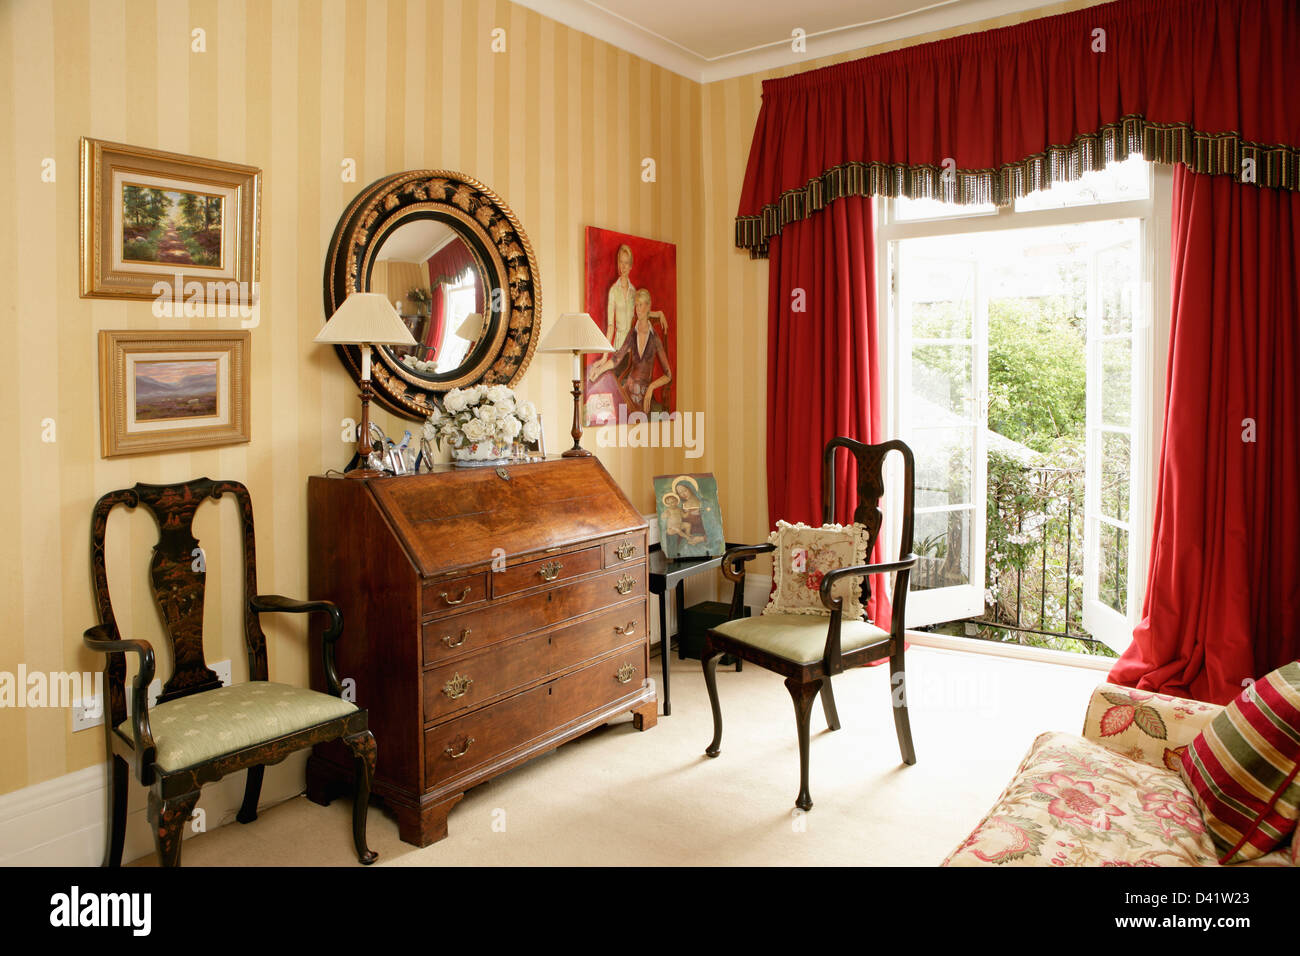 Bureau antique et des chaises confortables en étude maison avec des rideaux en velours rouge sur windows en français Banque D'Images